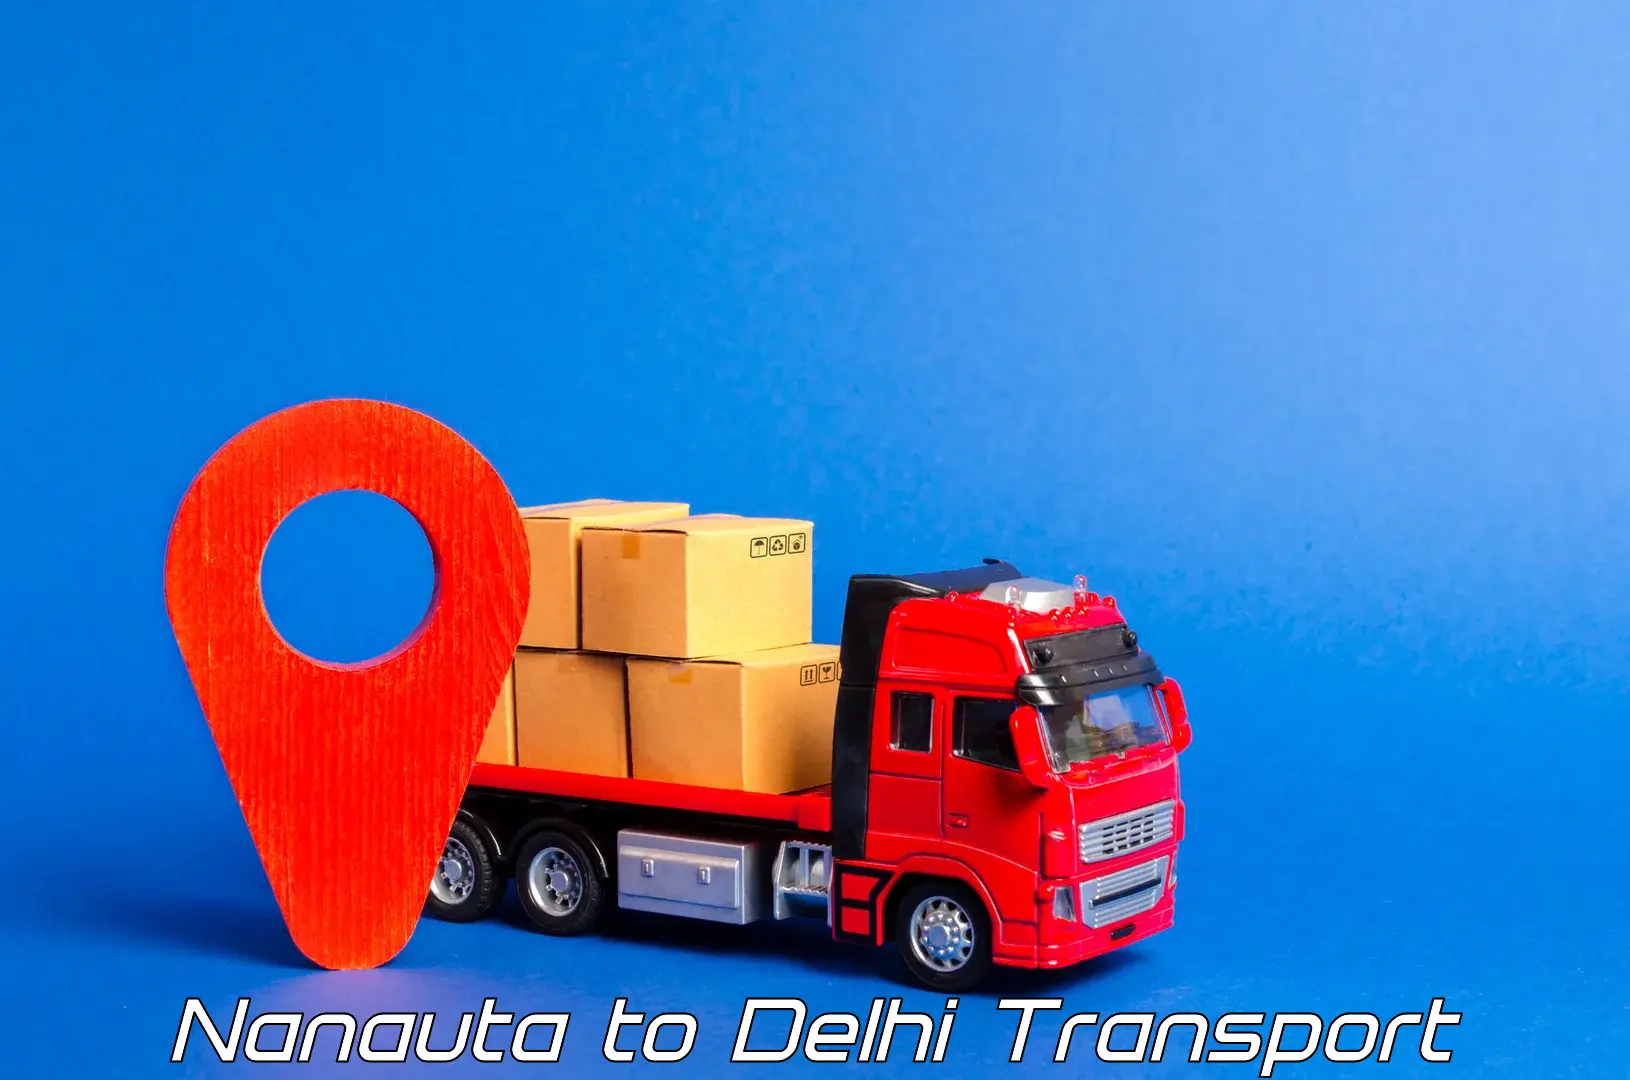 Furniture transport service Nanauta to Delhi